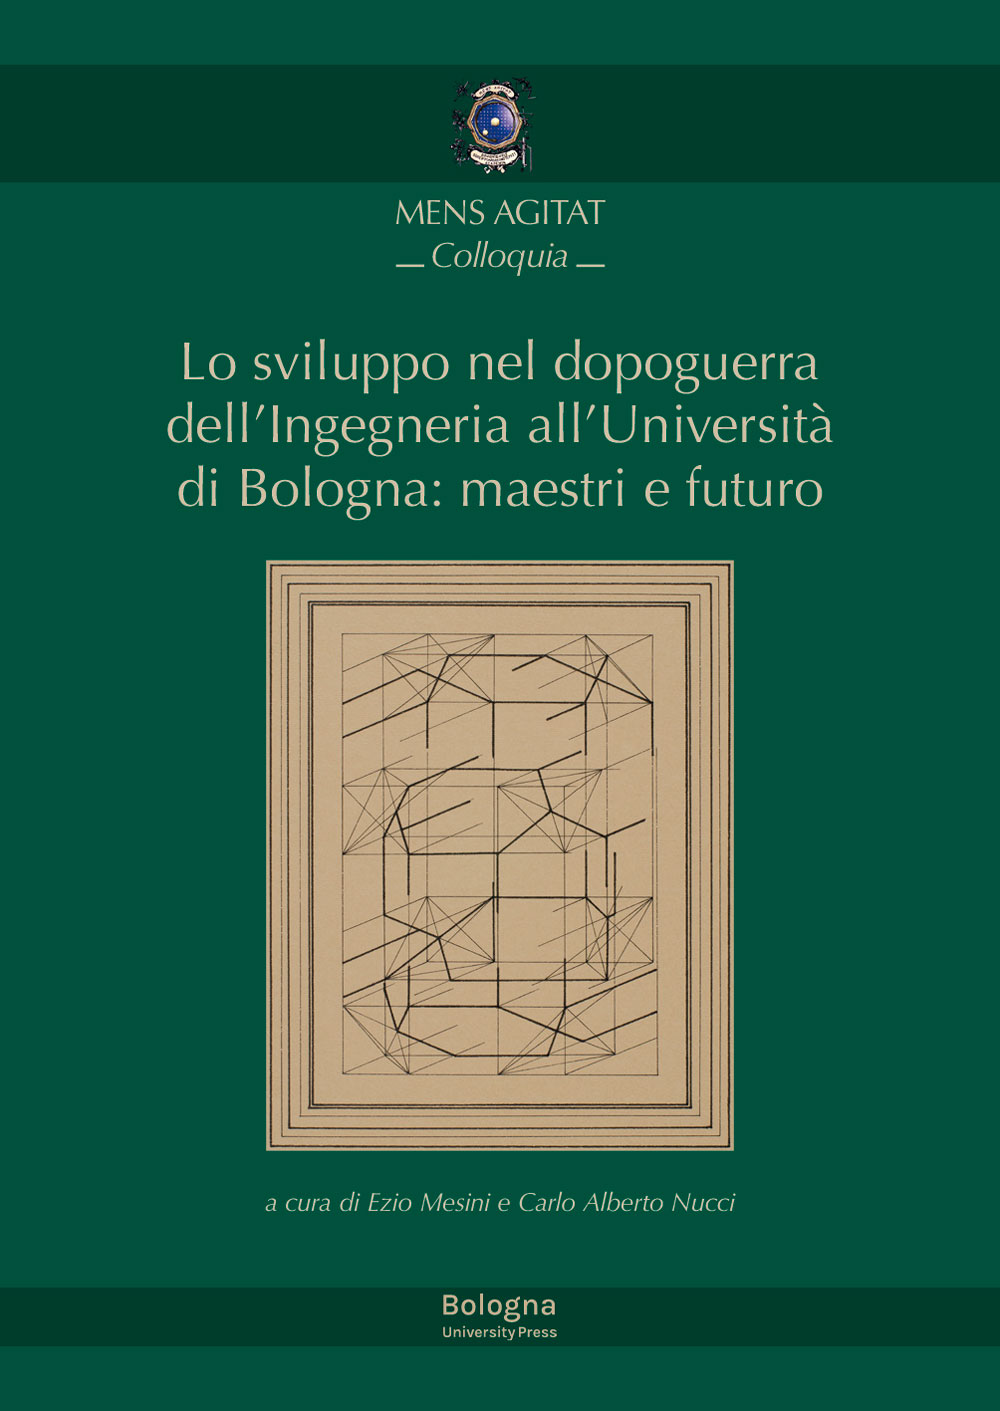 Lo sviluppo nel dopoguerra dell’Ingegneria all’Università di Bologna: maestri e futuro - Bologna University Press